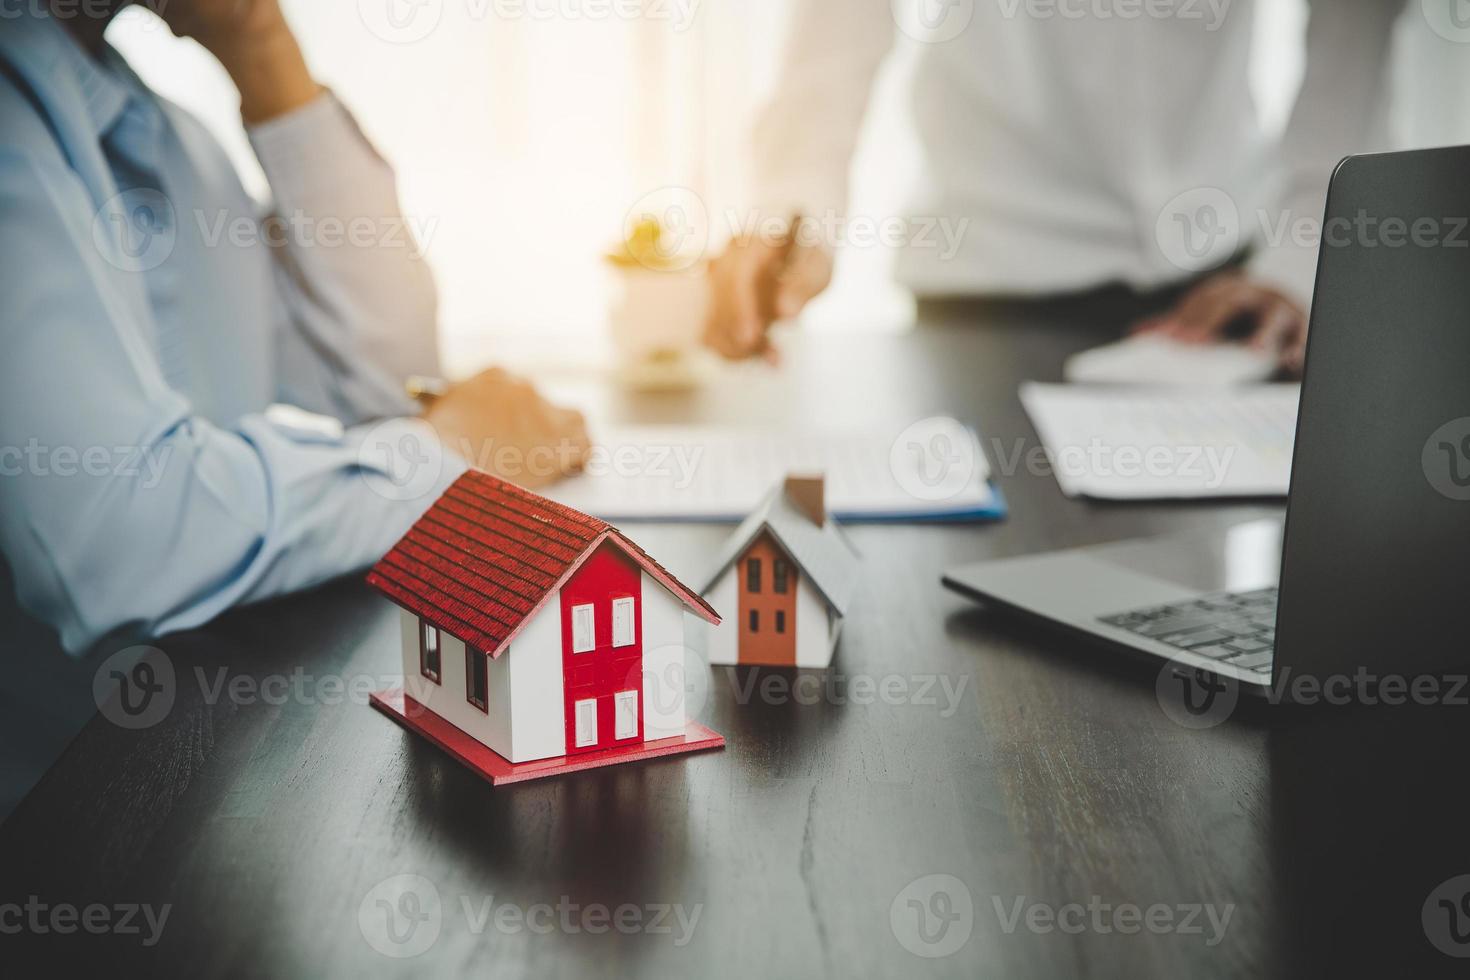 fastighetsmäklare presenterar och rådgör med kund till beslutsfattande teckna försäkringsformulär avtal, hemmodell, gällande bolåneerbjudande för och villaförsäkring. foto